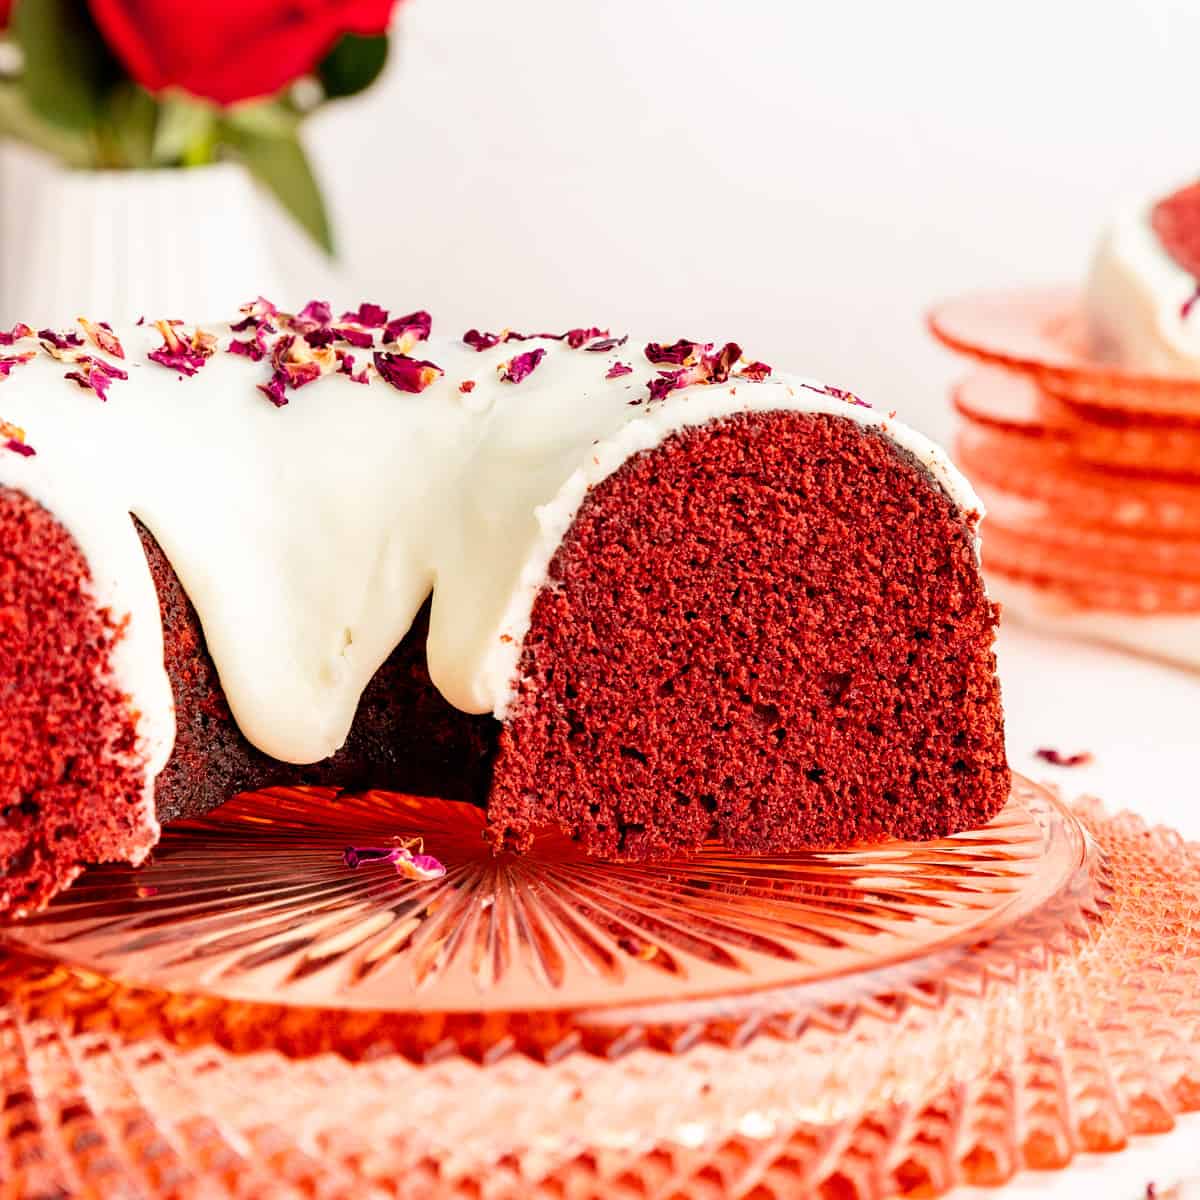 10 Red Velvet Cake in a Bakery Box - Nothing Bundt Cakes